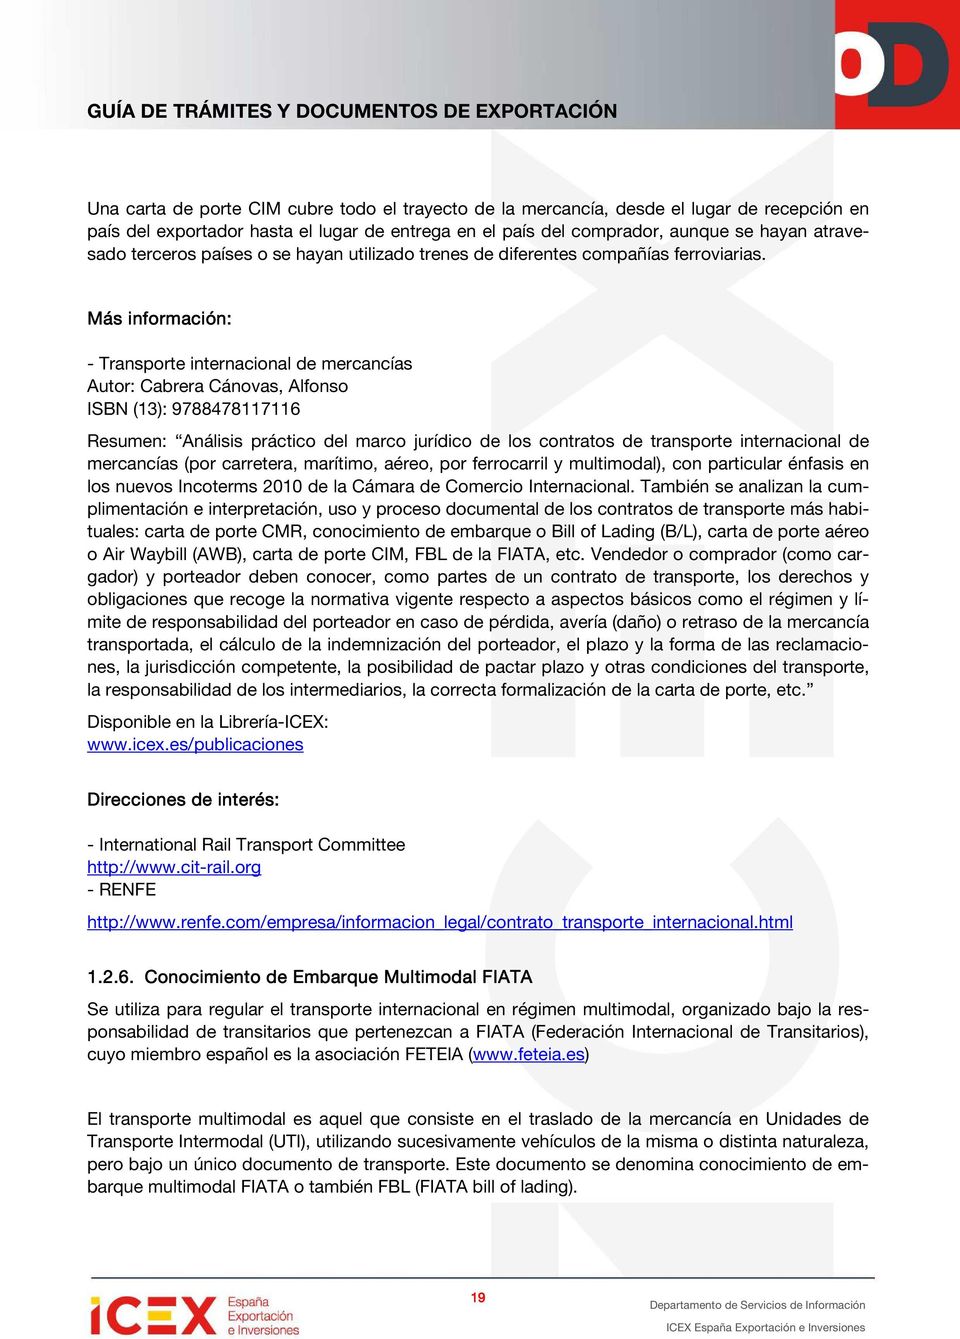 Más información: - Transporte internacional de mercancías Autor: Cabrera Cánovas, Alfonso ISBN (13): 9788478117116 Resumen: Análisis práctico del marco jurídico de los contratos de transporte